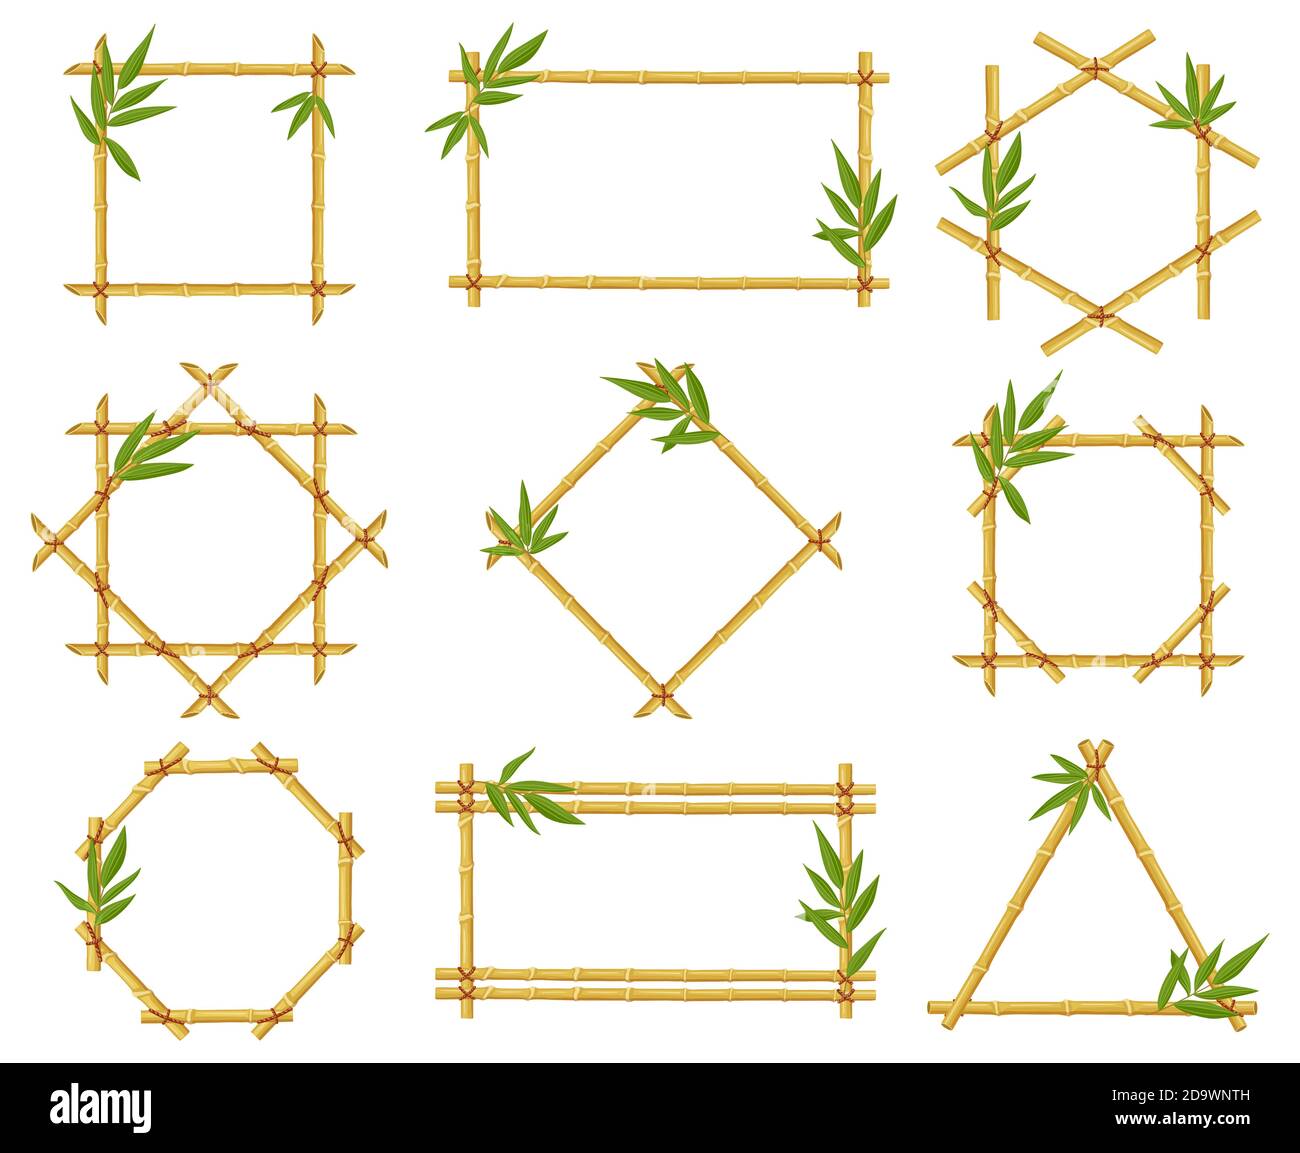 Cornici cartone animato di bambù. Steam cornice, gambi di bambù con foglie, bastoni di bambù asiatici bordi di legno vettoriale illustrazione icone set Illustrazione Vettoriale